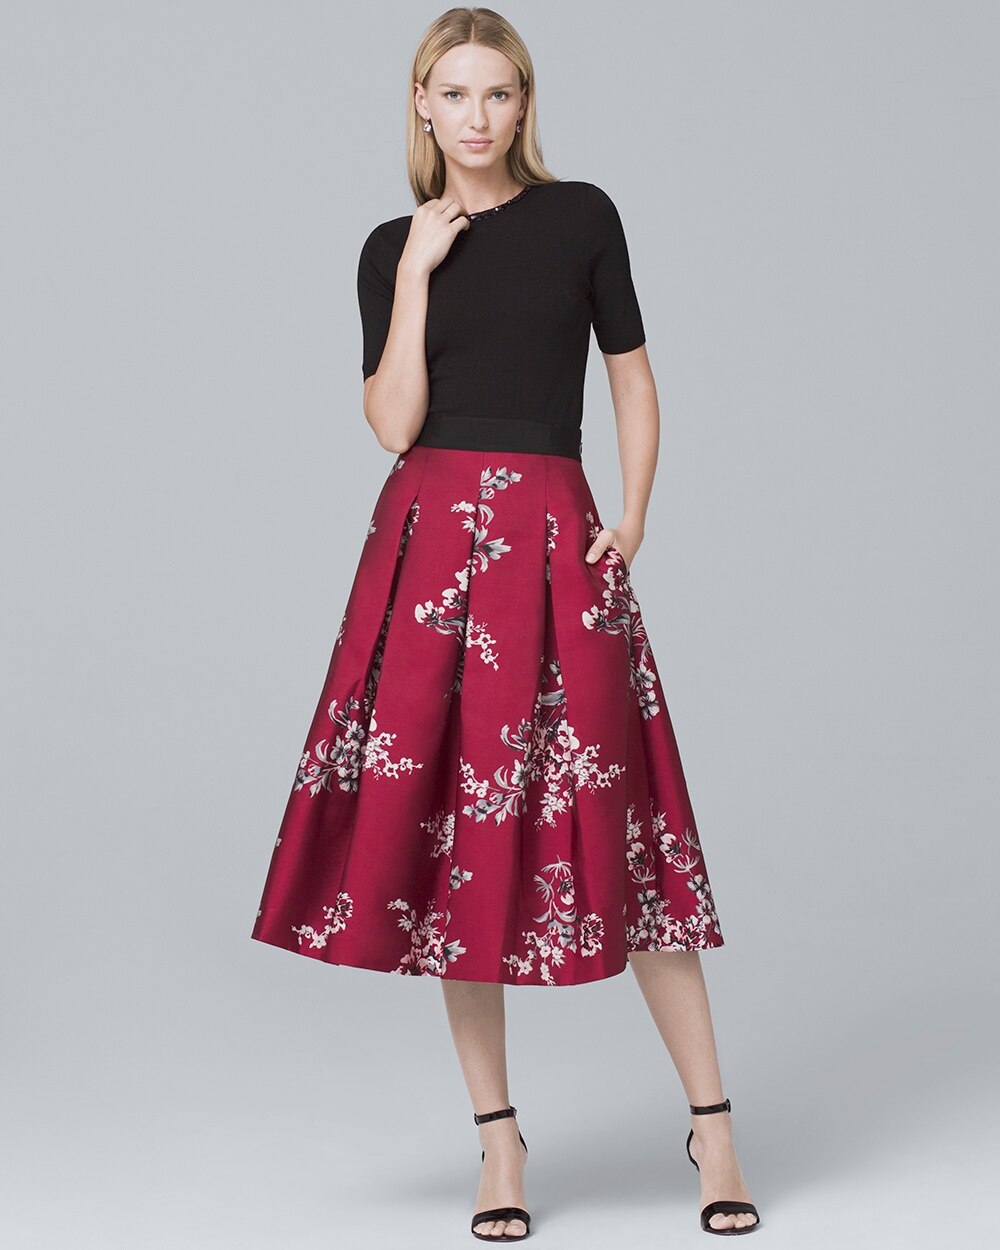 Floral Full Midi Skirt - White House Black Market